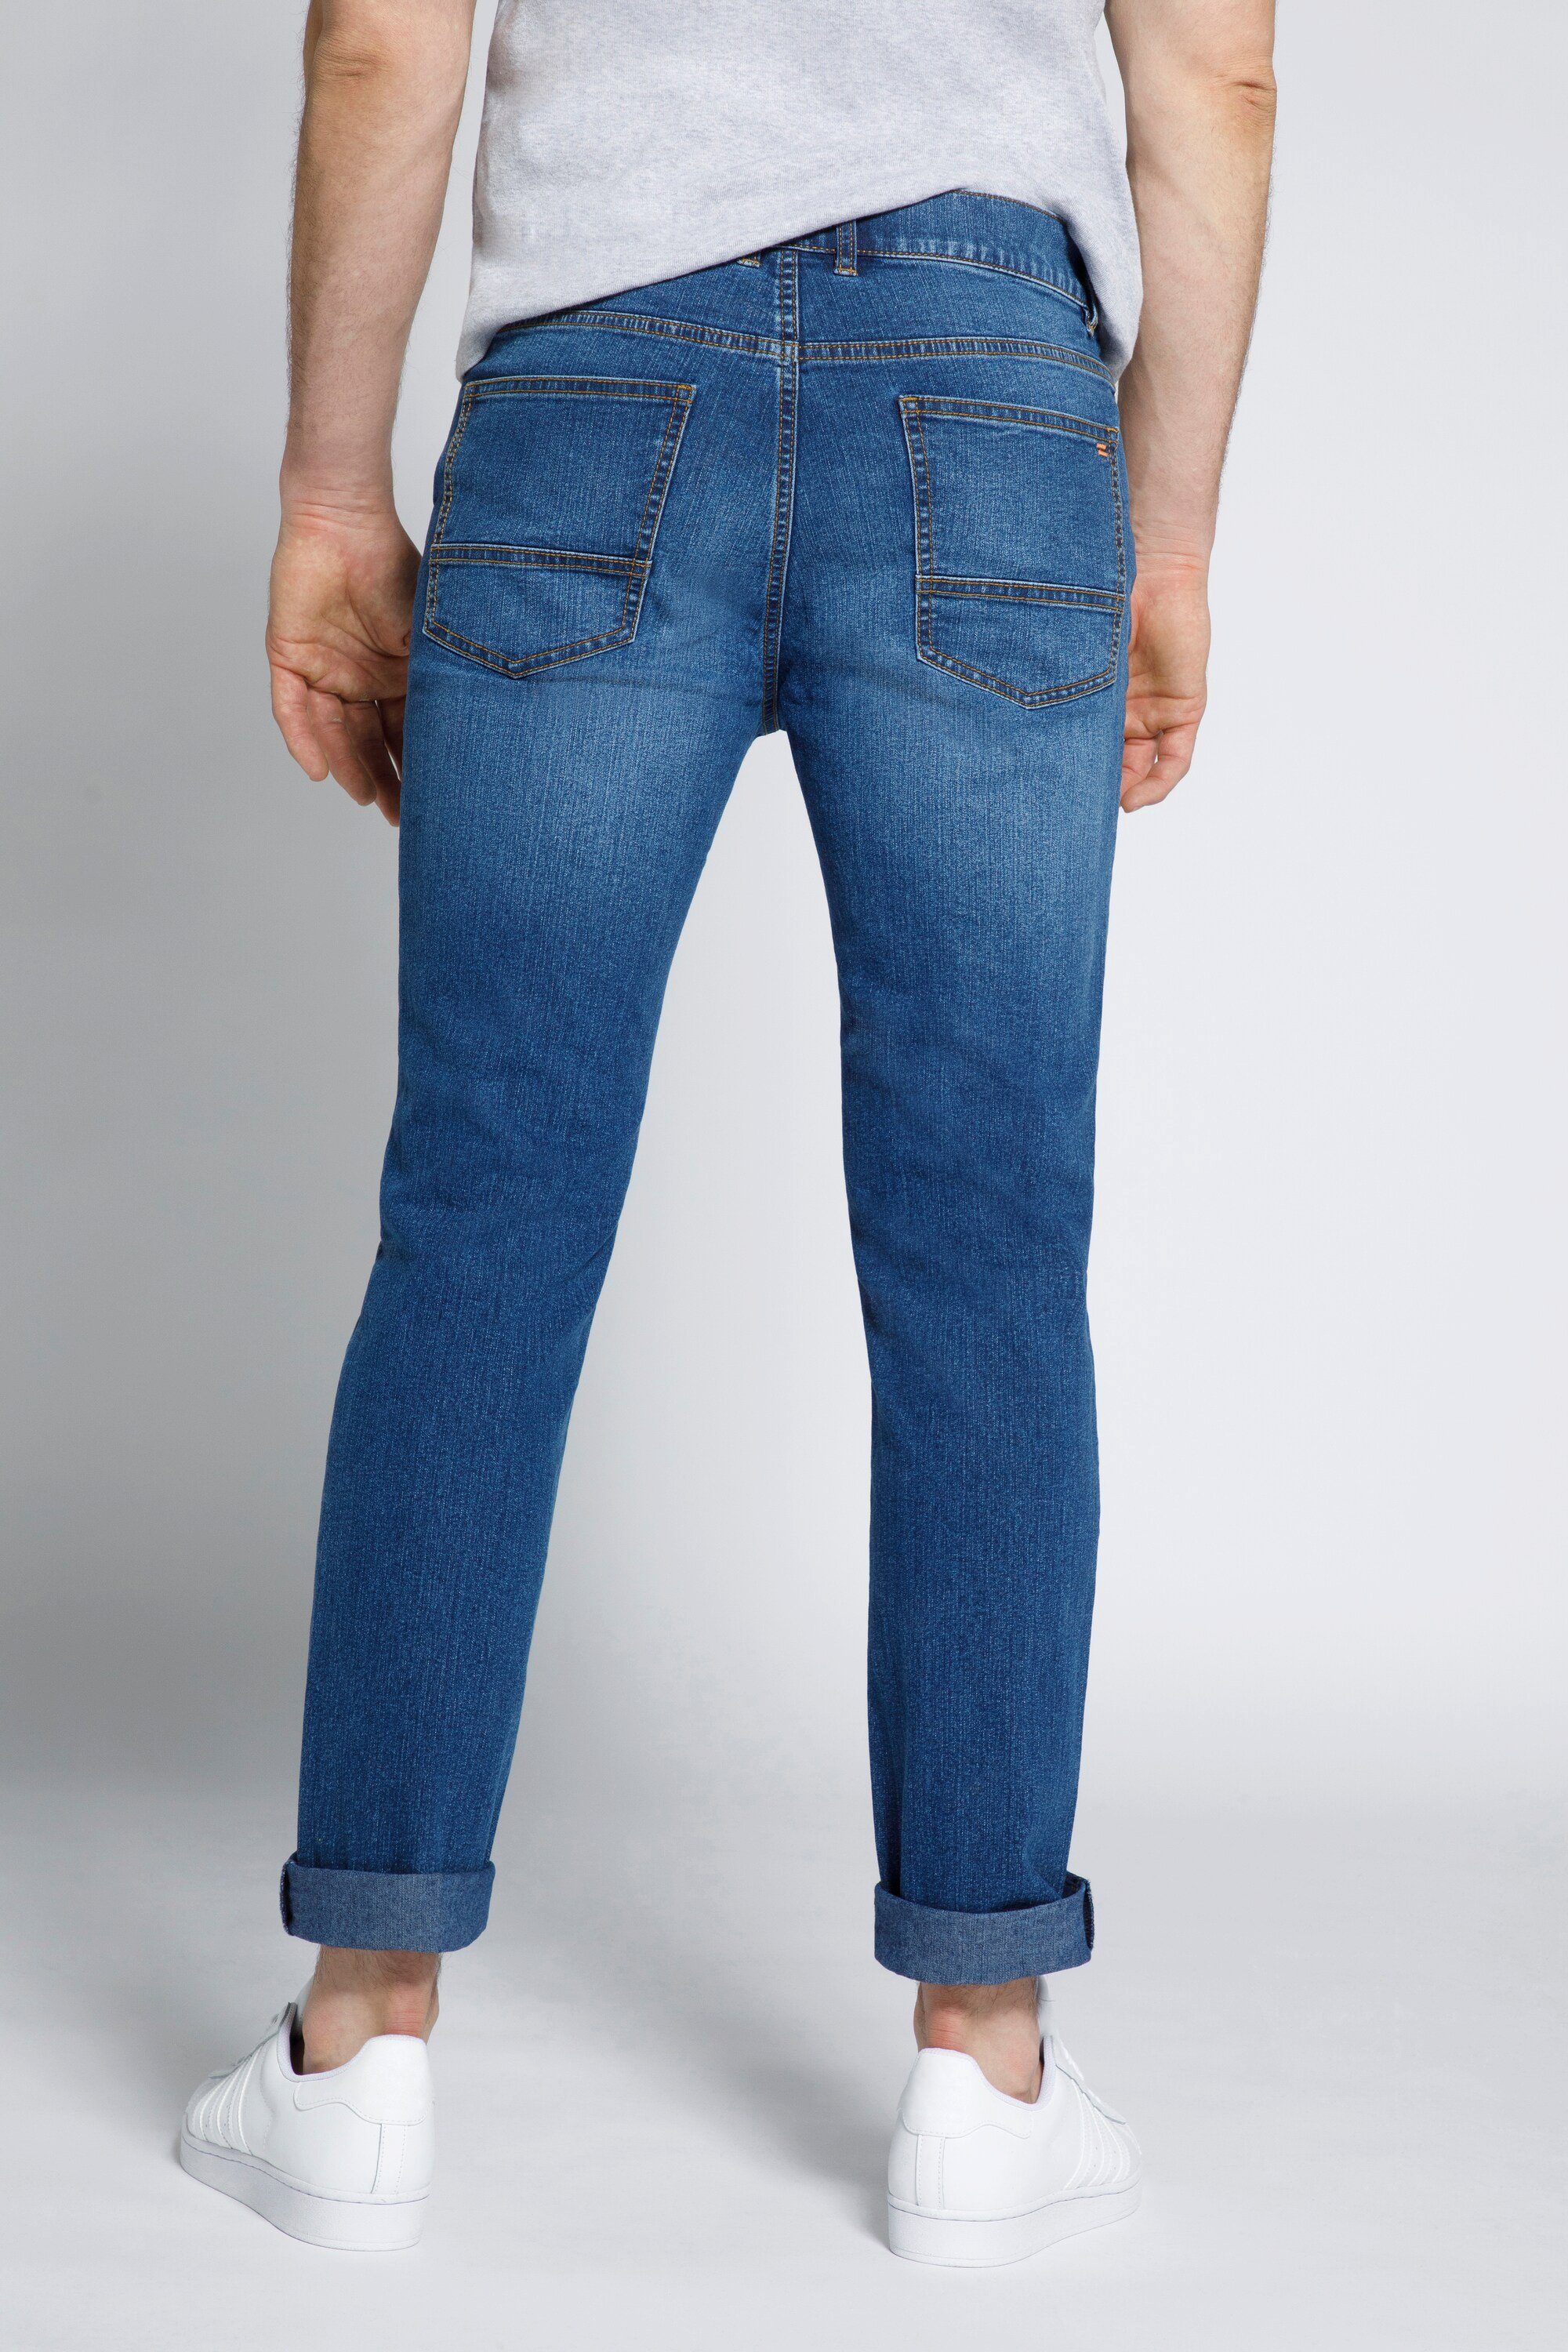 Jeans denim Fit Modern 5-Pocket-Jeans Herren STHUGE STHUGE blue